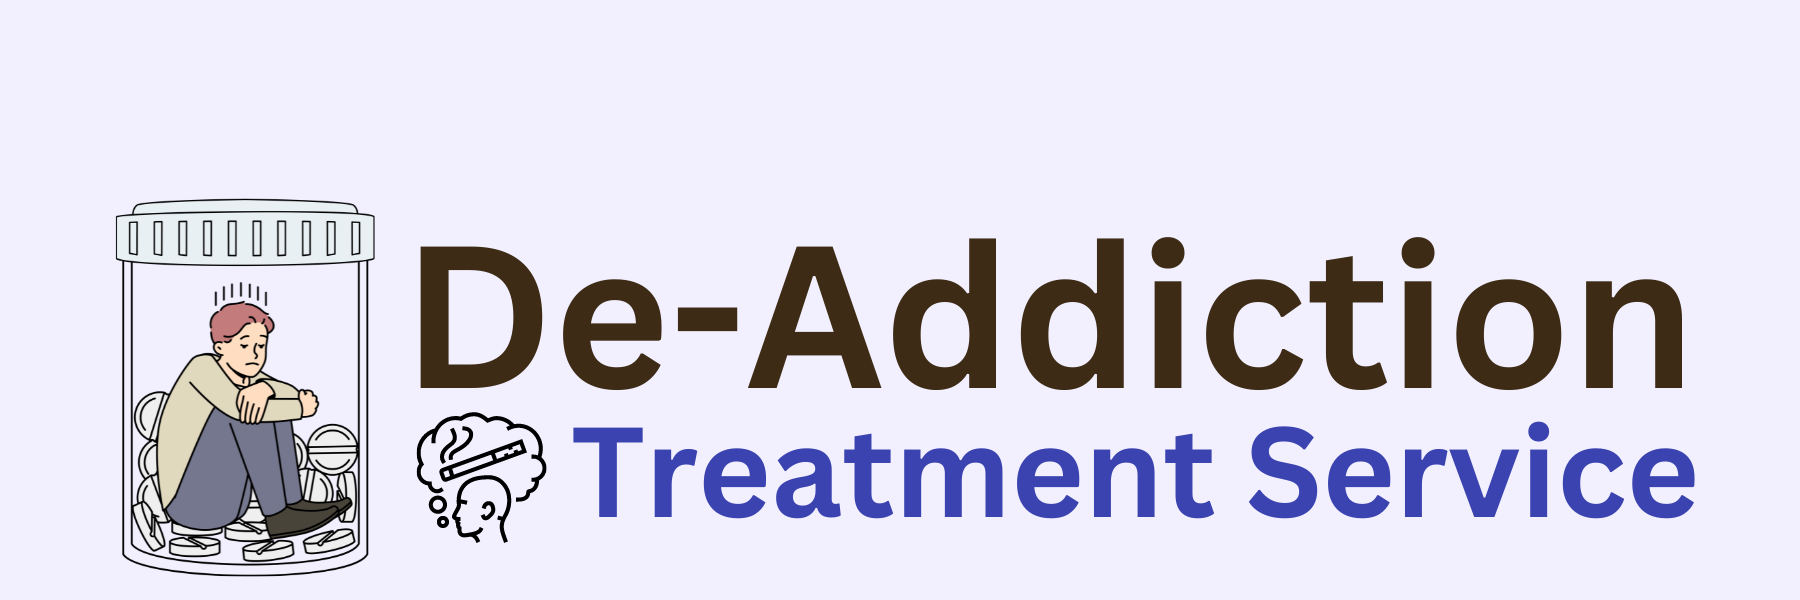 De - Addiction Treatment